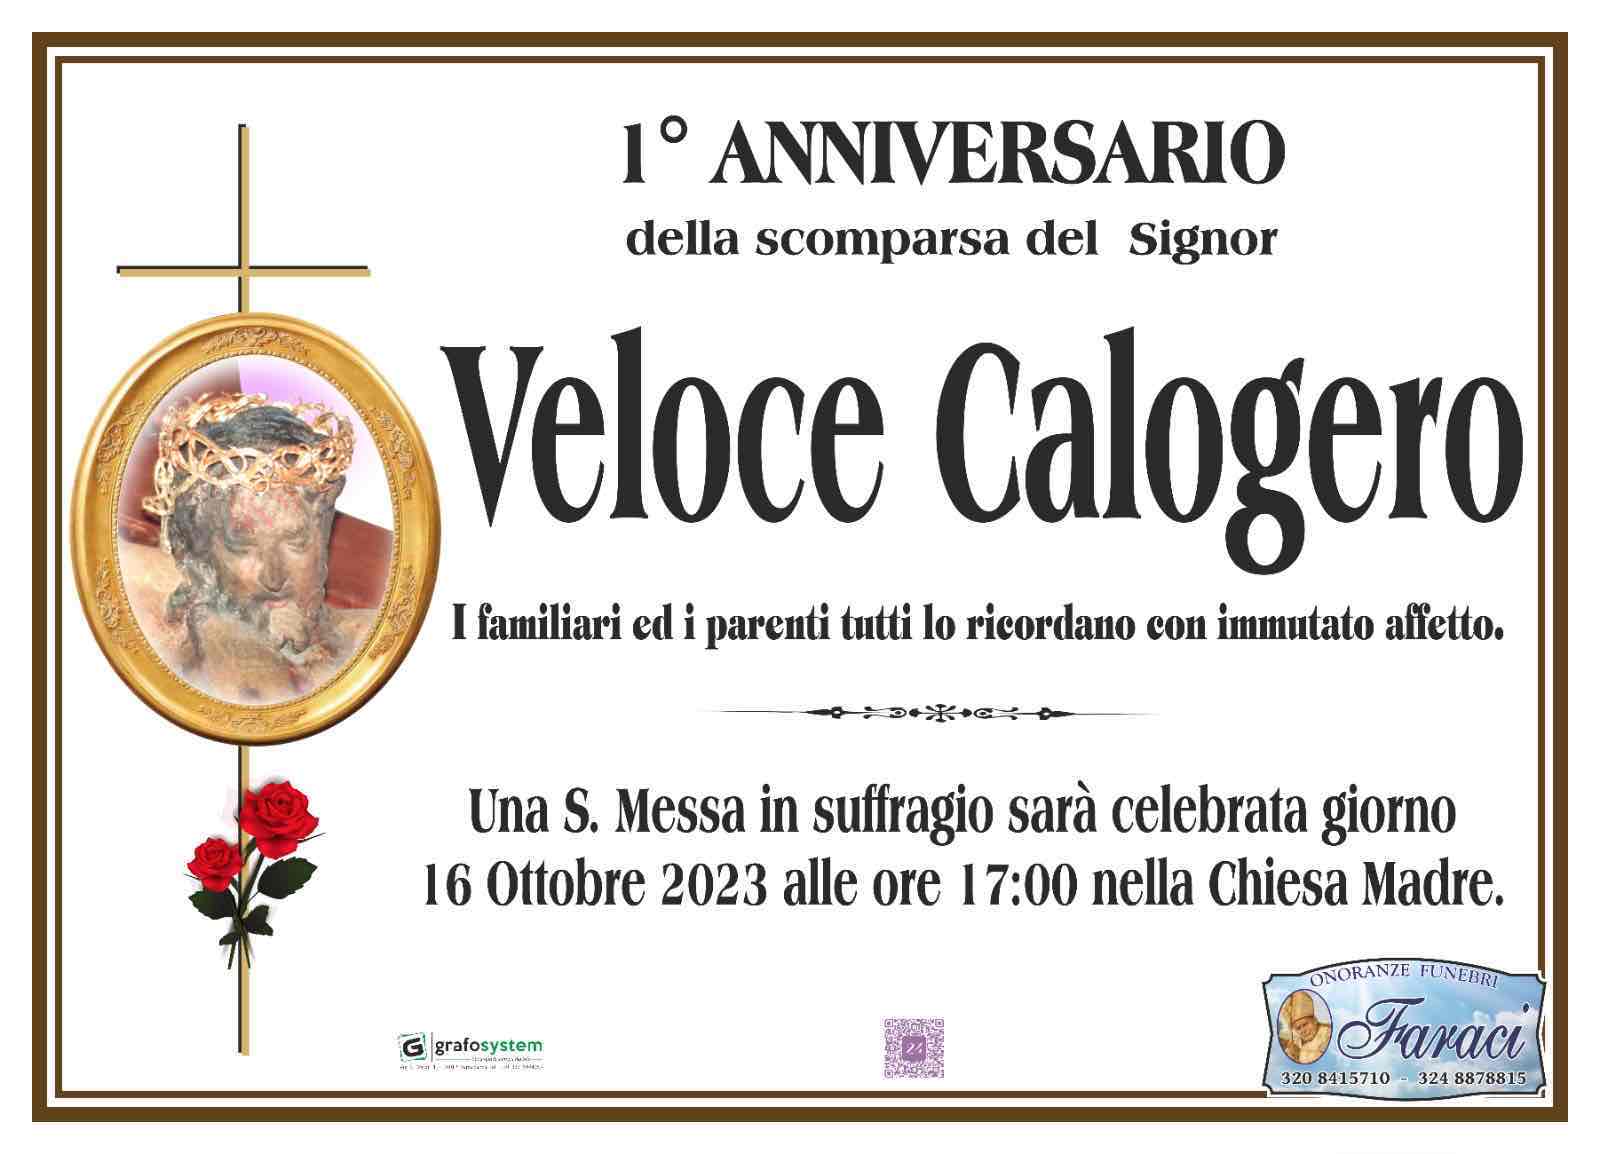 Calogero Veloce